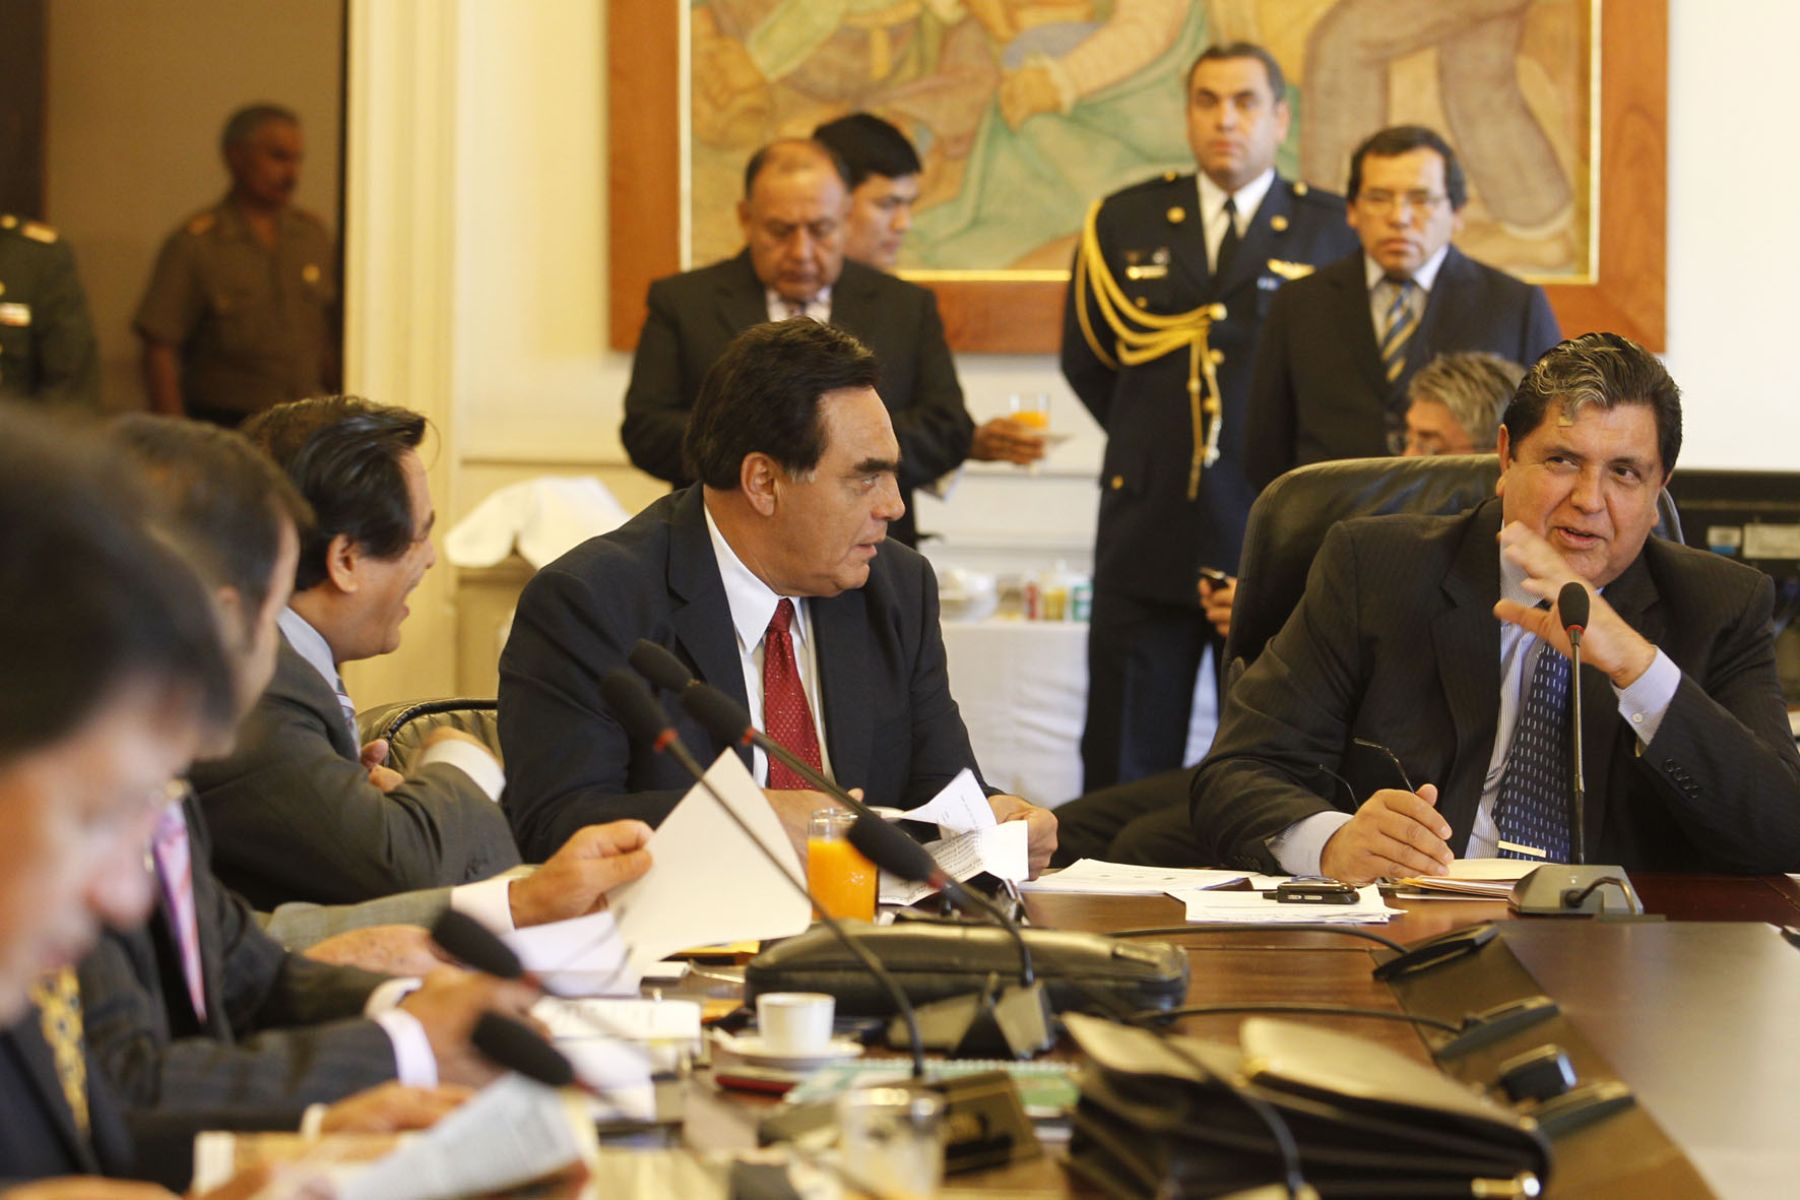 Gonzales Posada: Suspensión de relaciones con Libia es un enorme gesto moral de Perú | Noticias | Agencia Peruana de Noticias Andina